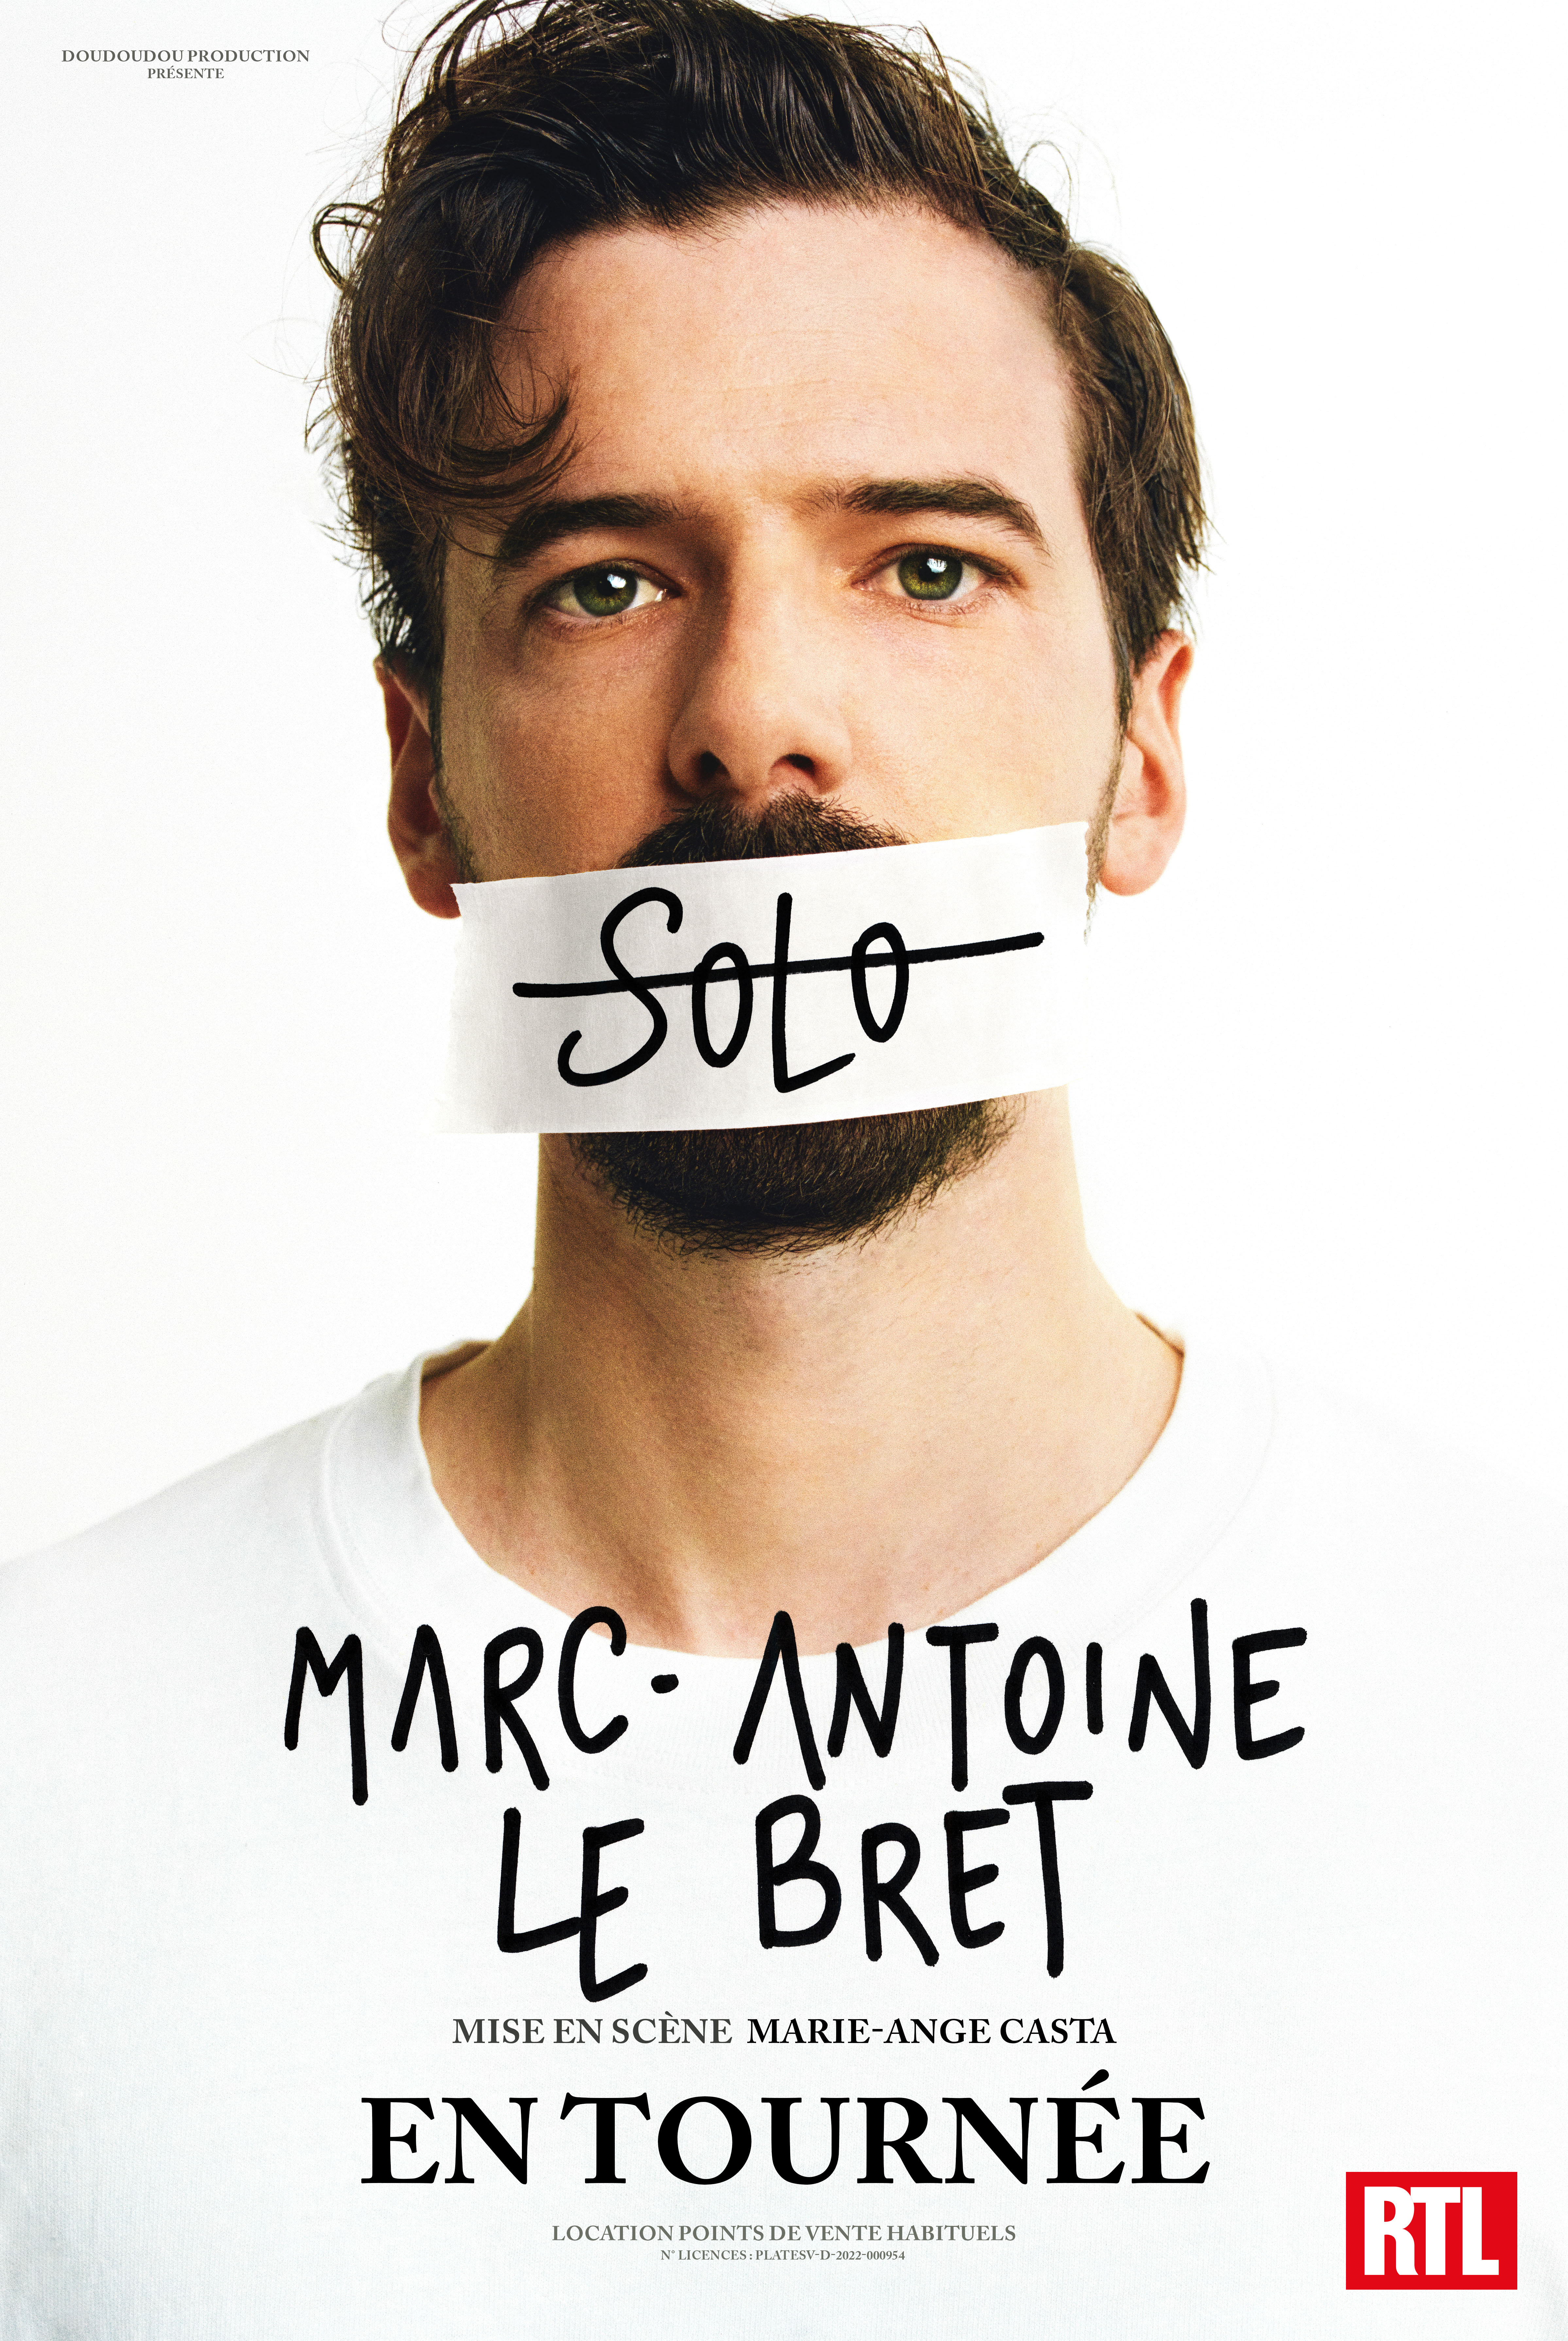 MARC-ANTOINE LE BRET